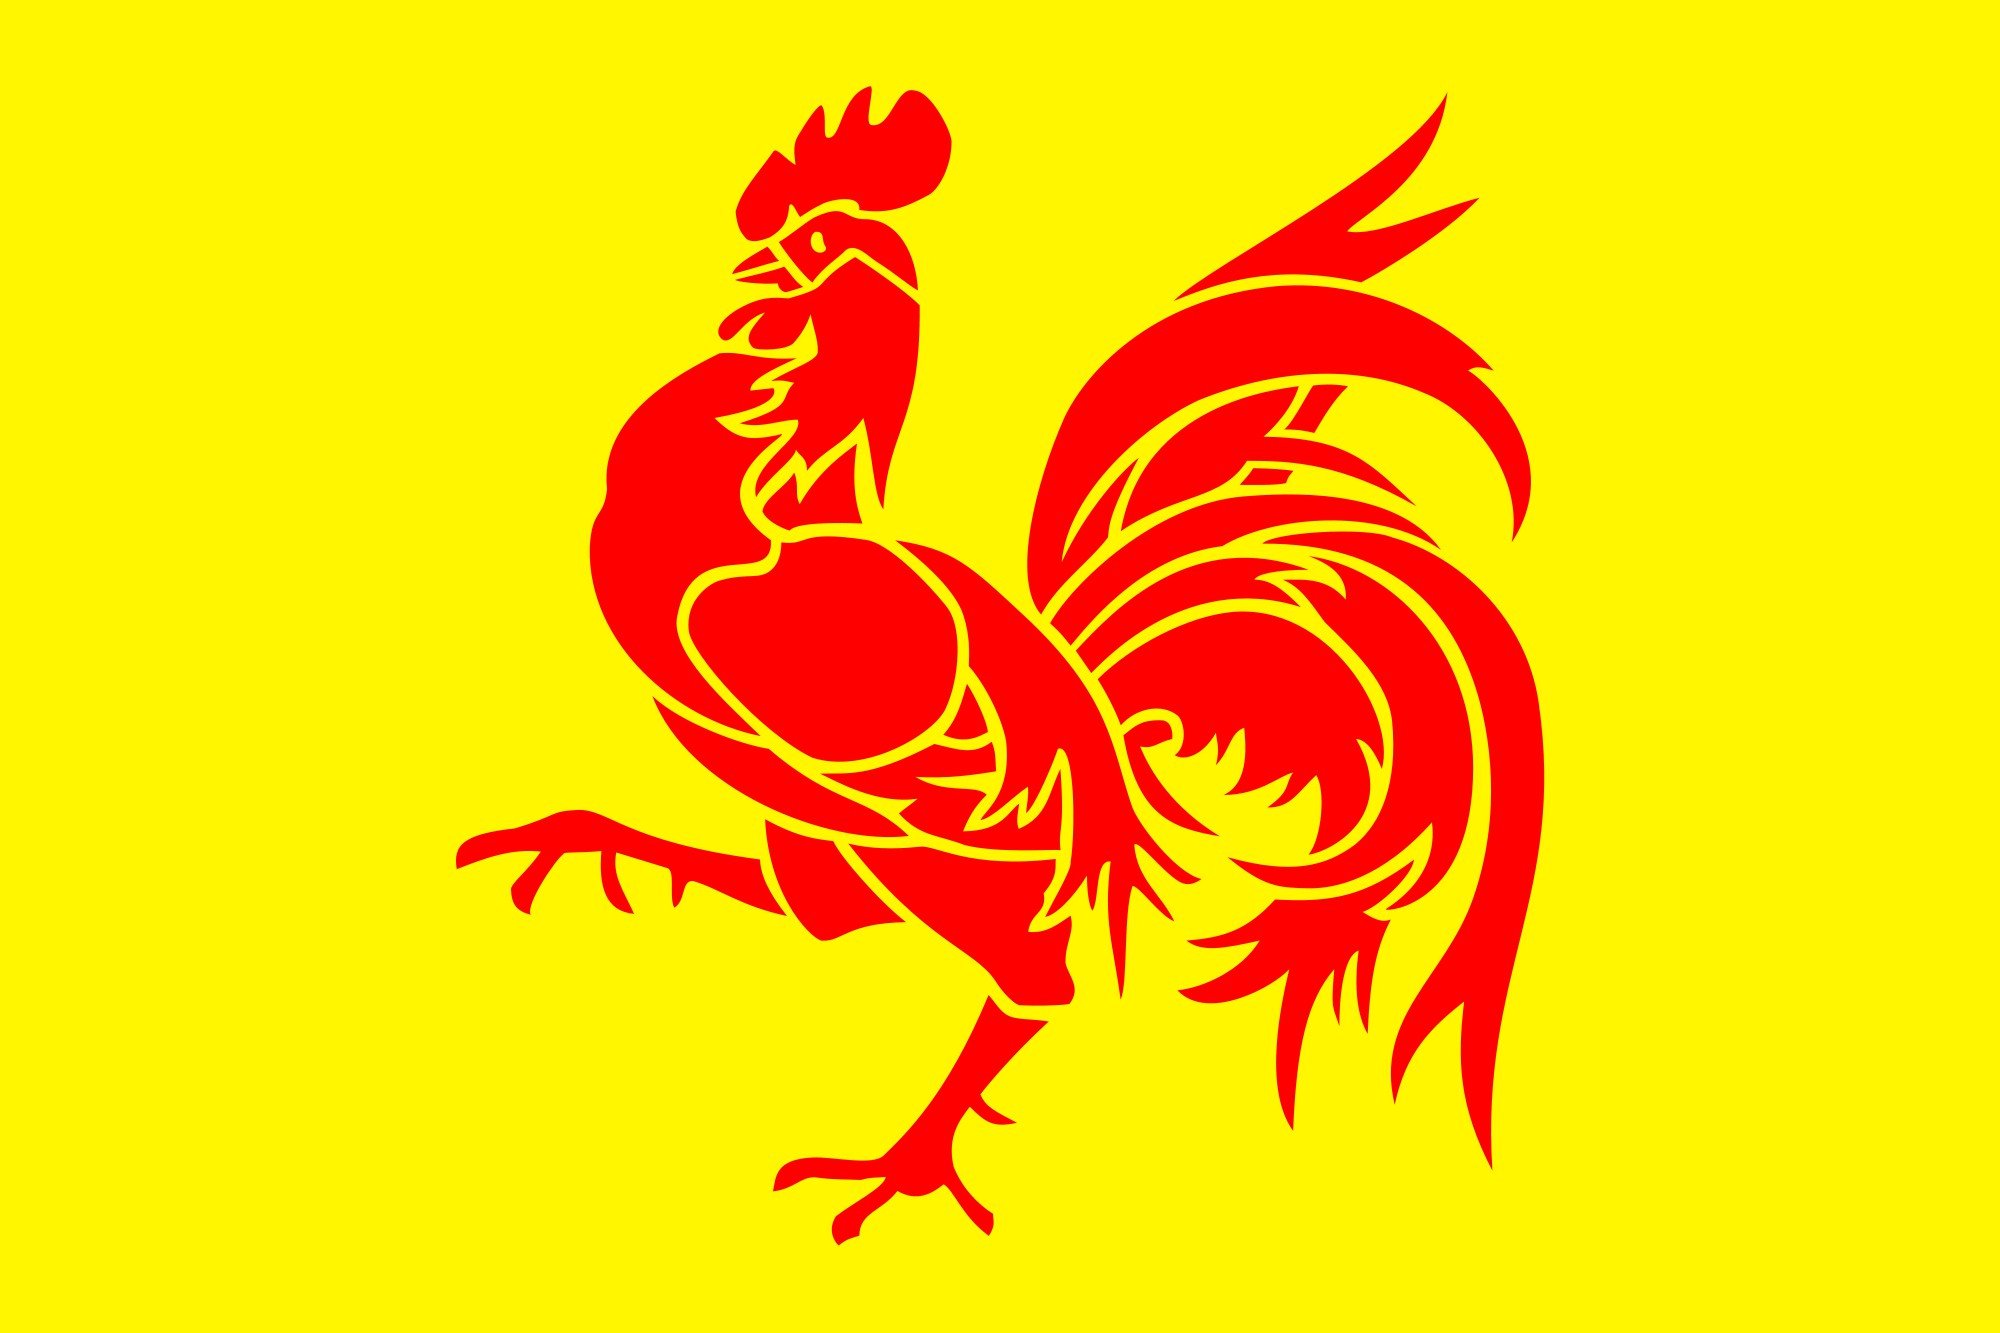 visit wallonia logo